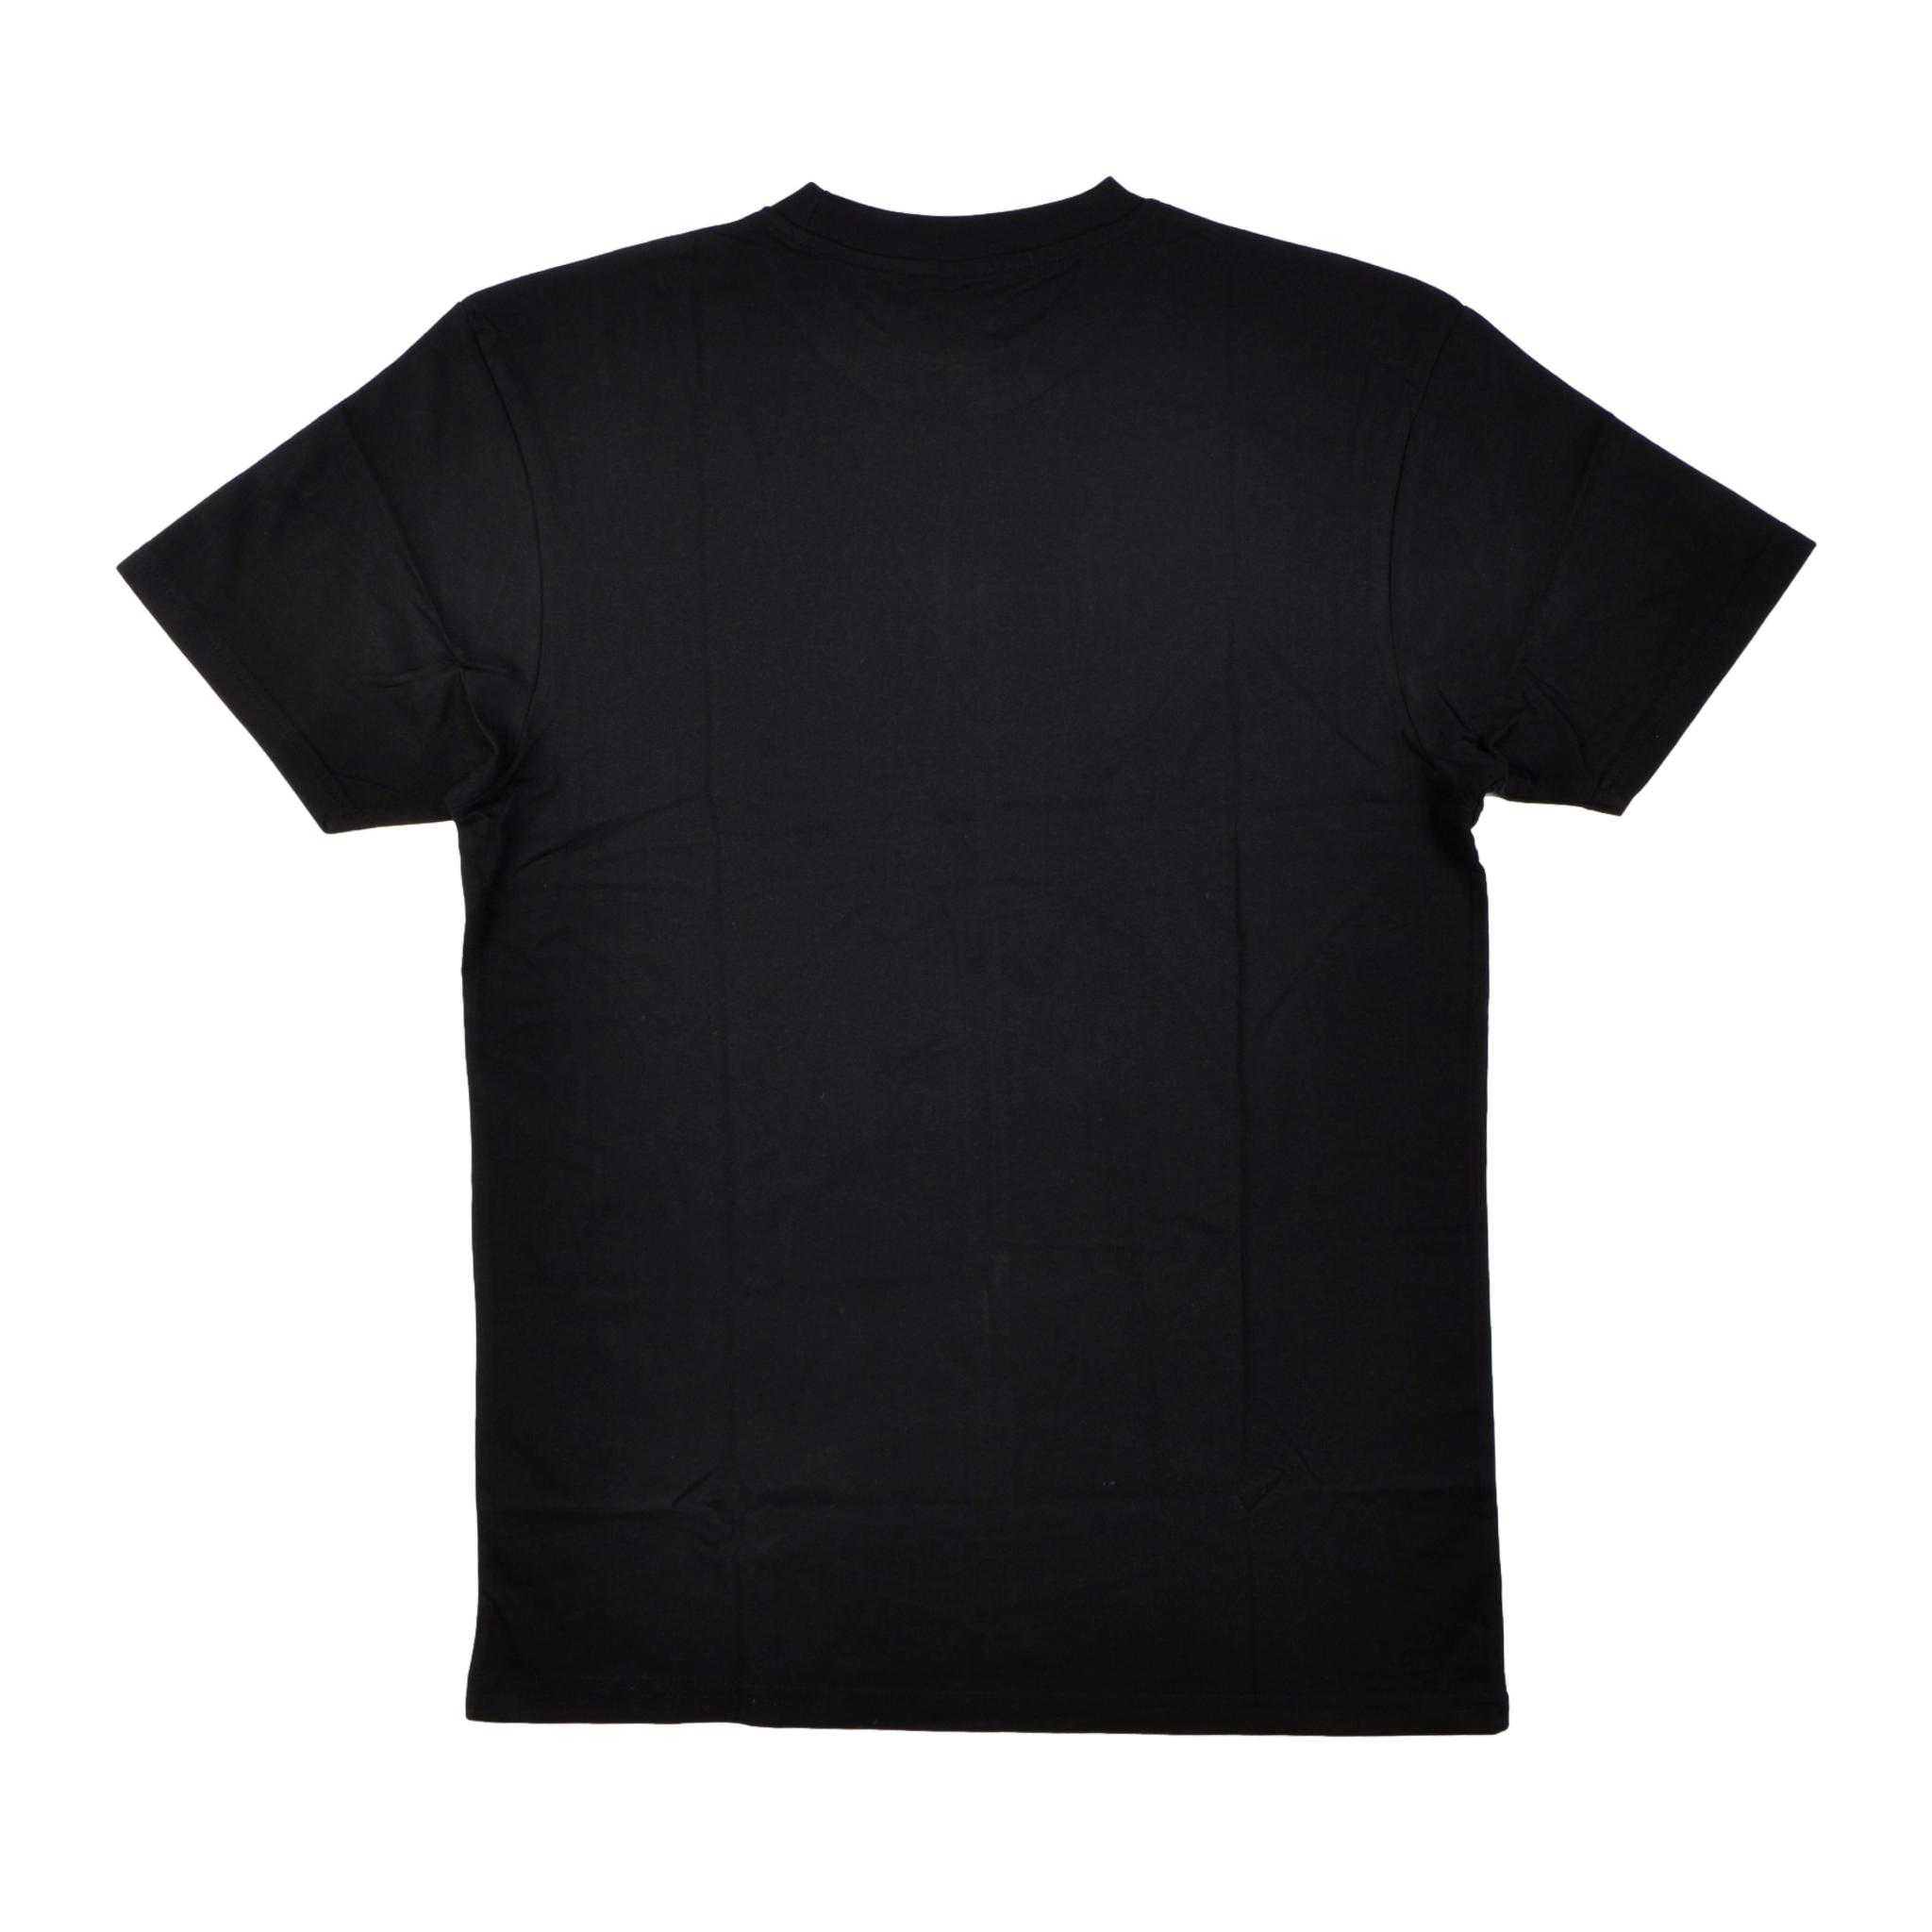 Independent TC Bauhaus T Shirt Black